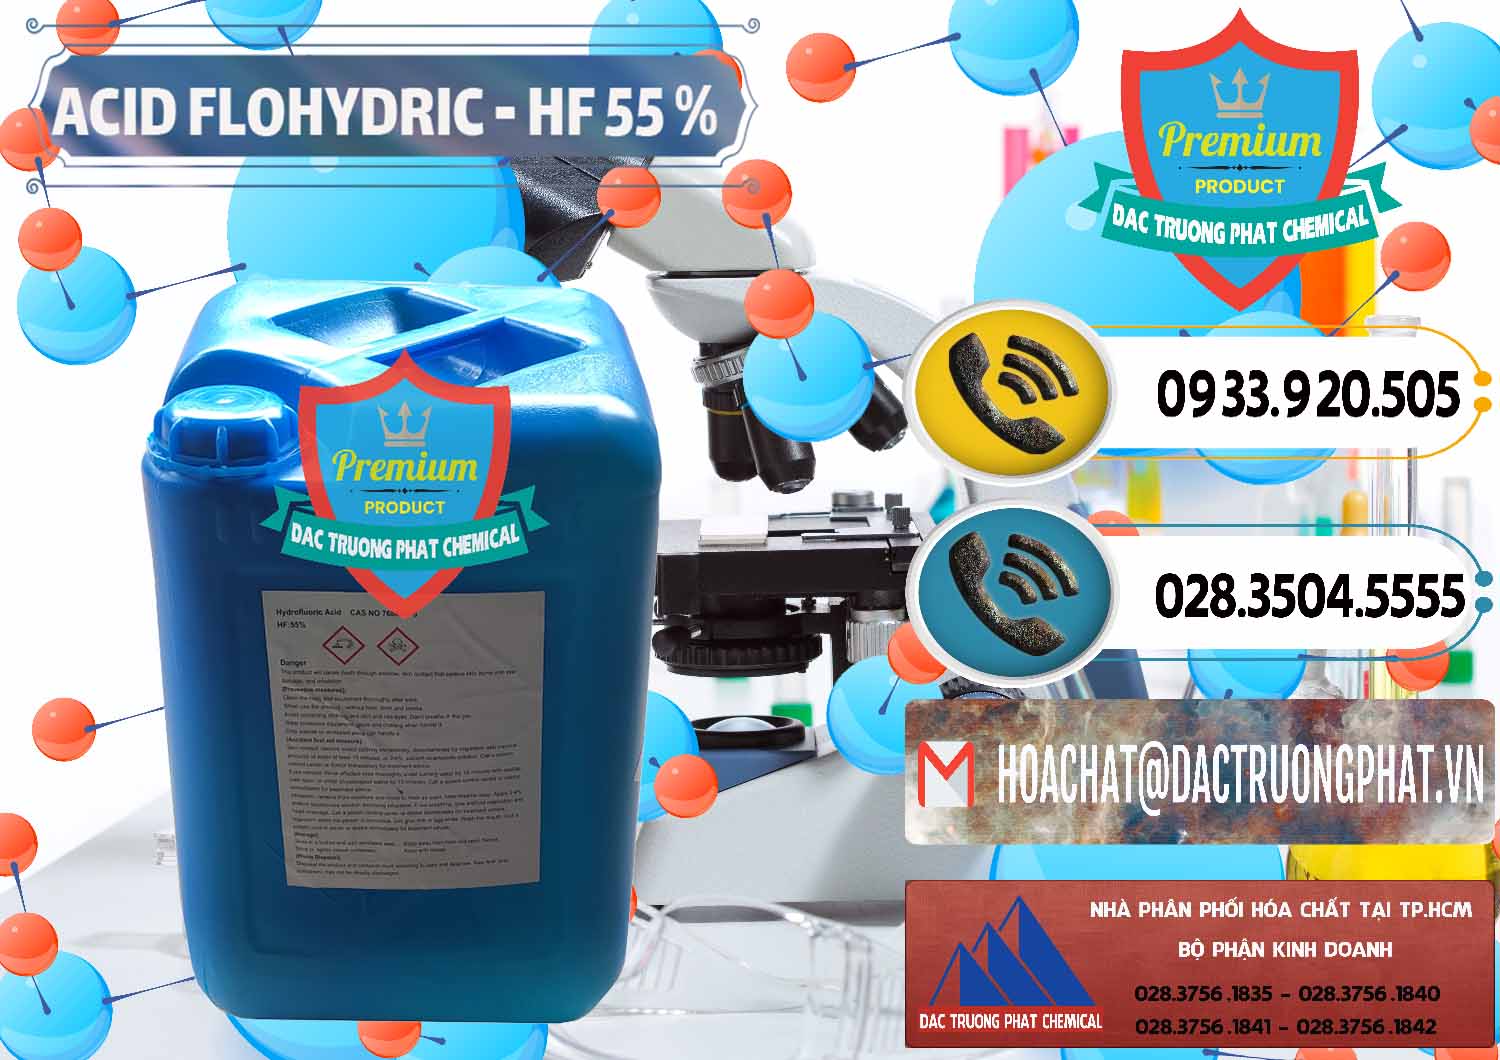 Cty chuyên cung cấp và bán Axit HF - Acid HF 55% Can Xanh Trung Quốc China - 0080 - Công ty chuyên bán _ phân phối hóa chất tại TP.HCM - hoachatdetnhuom.vn